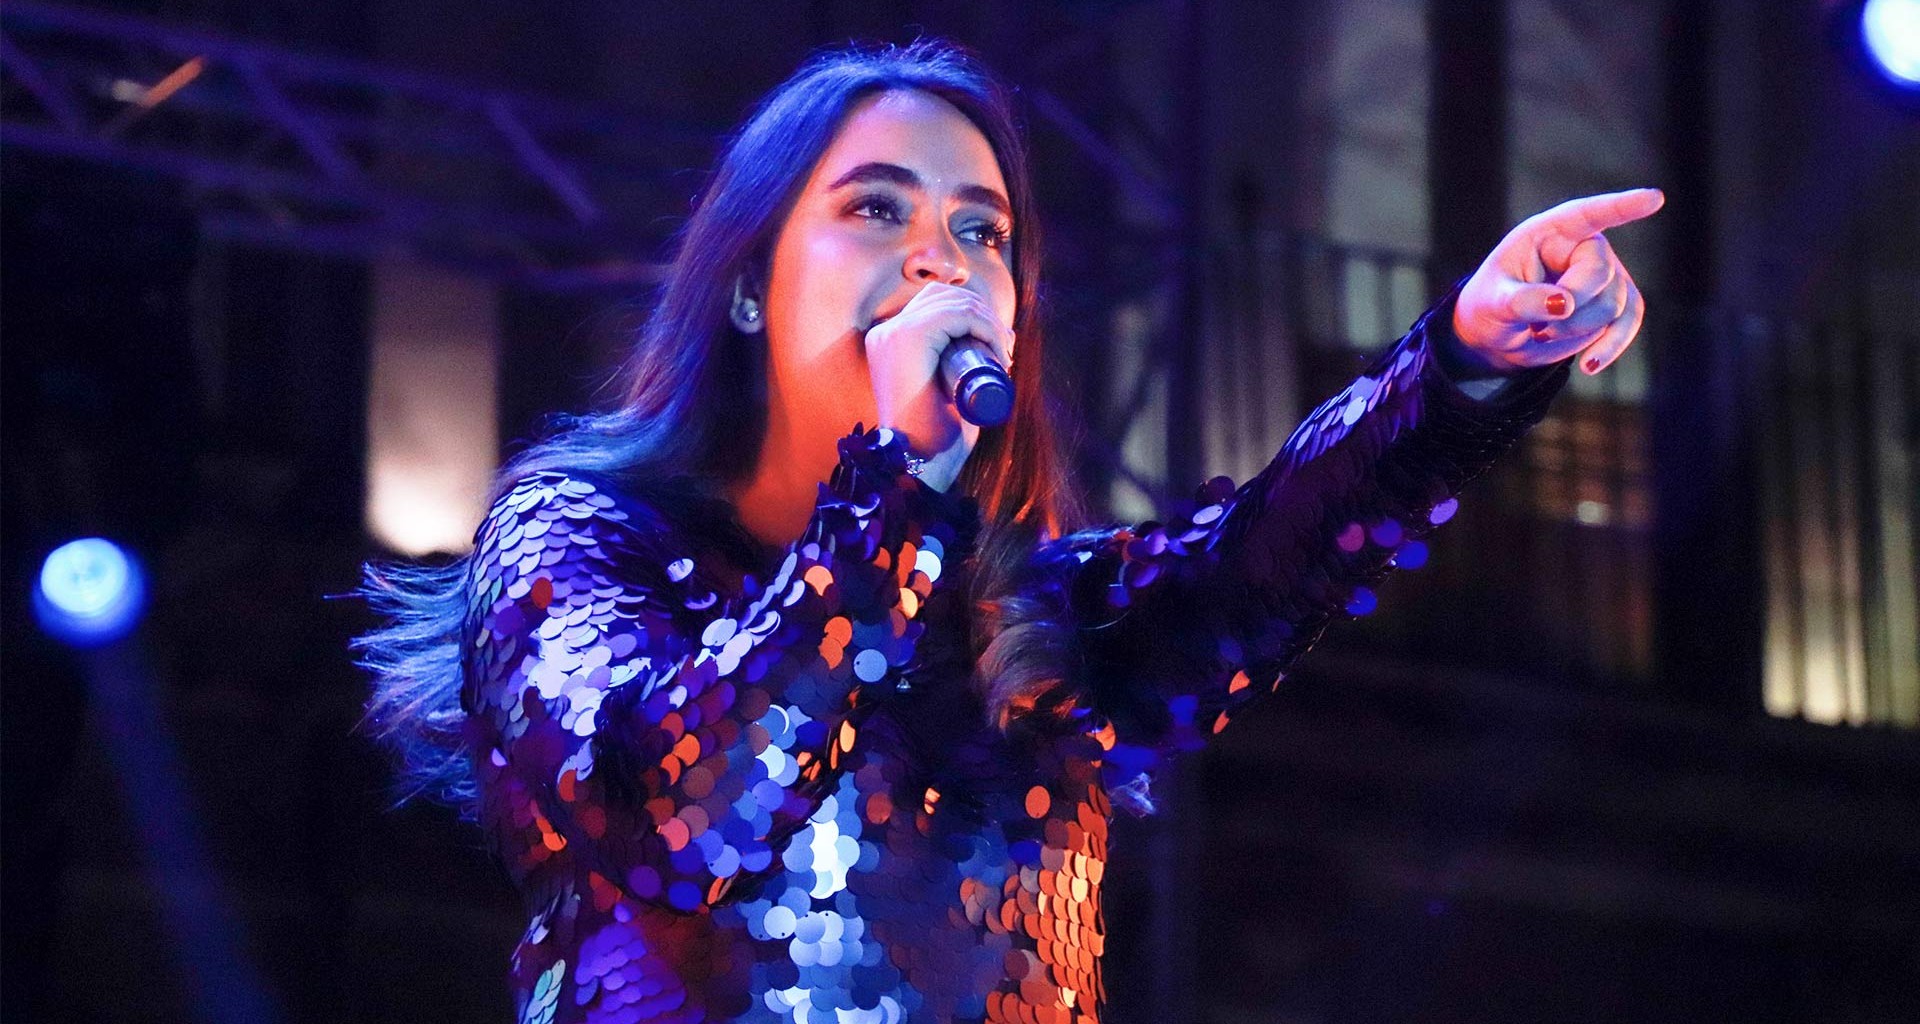 Tatina Puente en el escenario regional del festival de la canción 2018